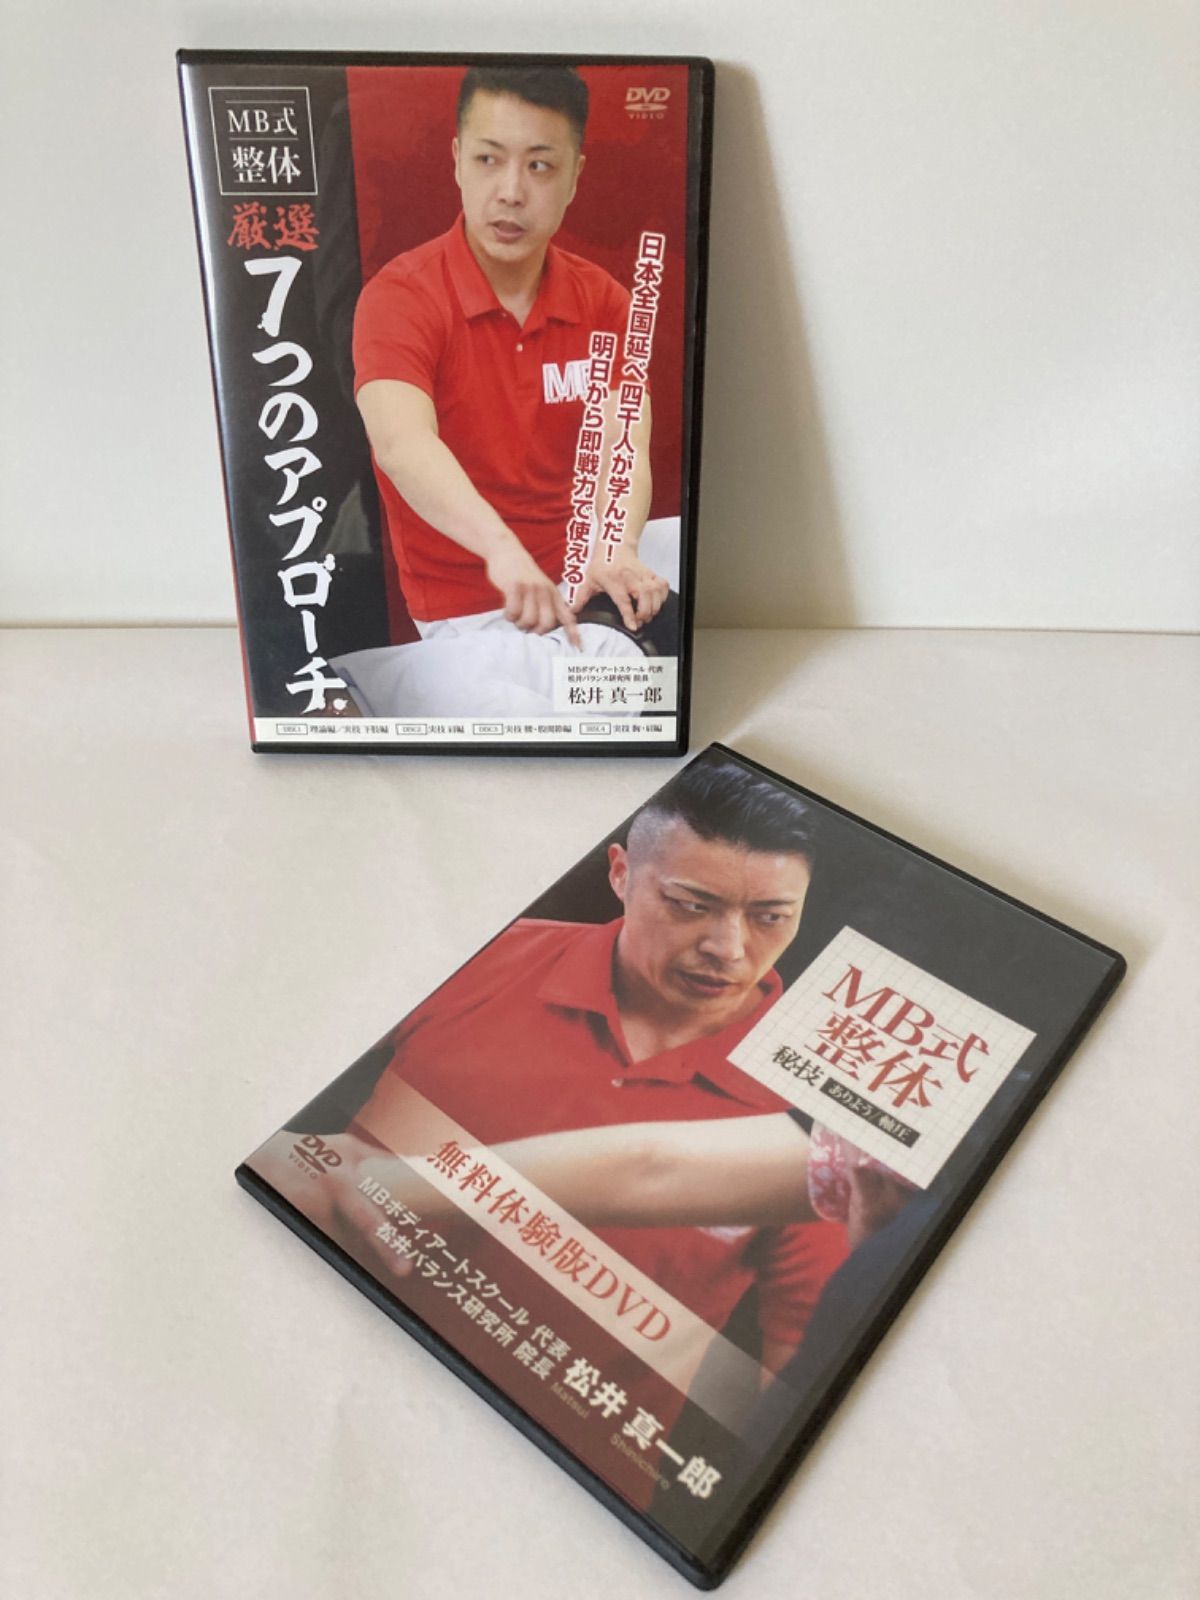 松井真一郎の『MB式整体【秘技】ありよう / 軸圧』DVD+spbgp44.ru